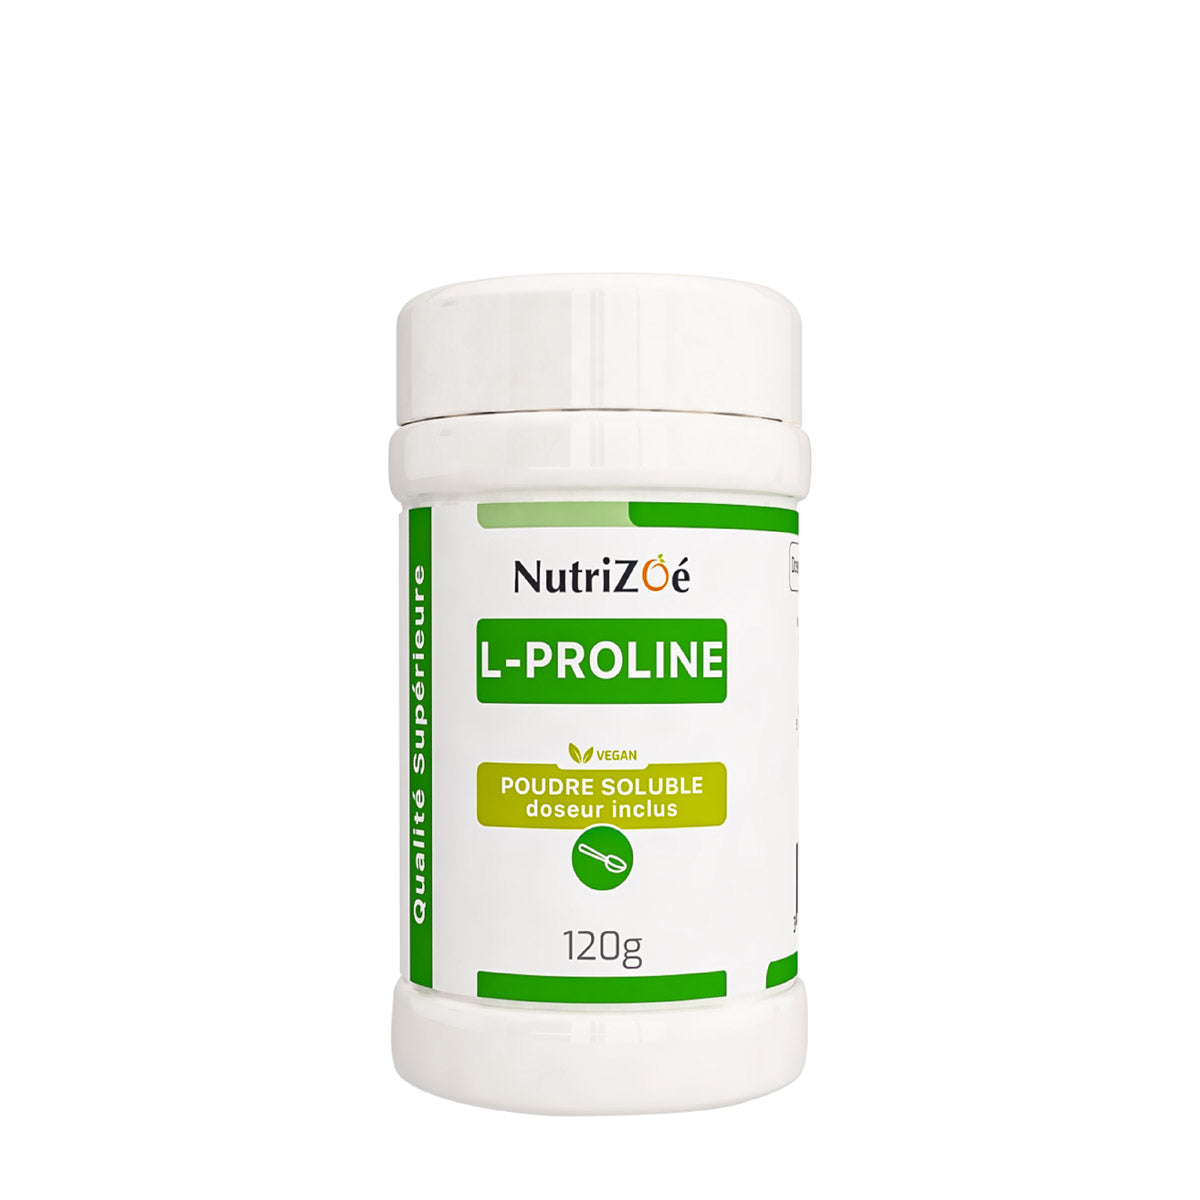 L-Proline d'origine végétale | poudre soluble | Format 120g | acide aminé | Nutrizoé